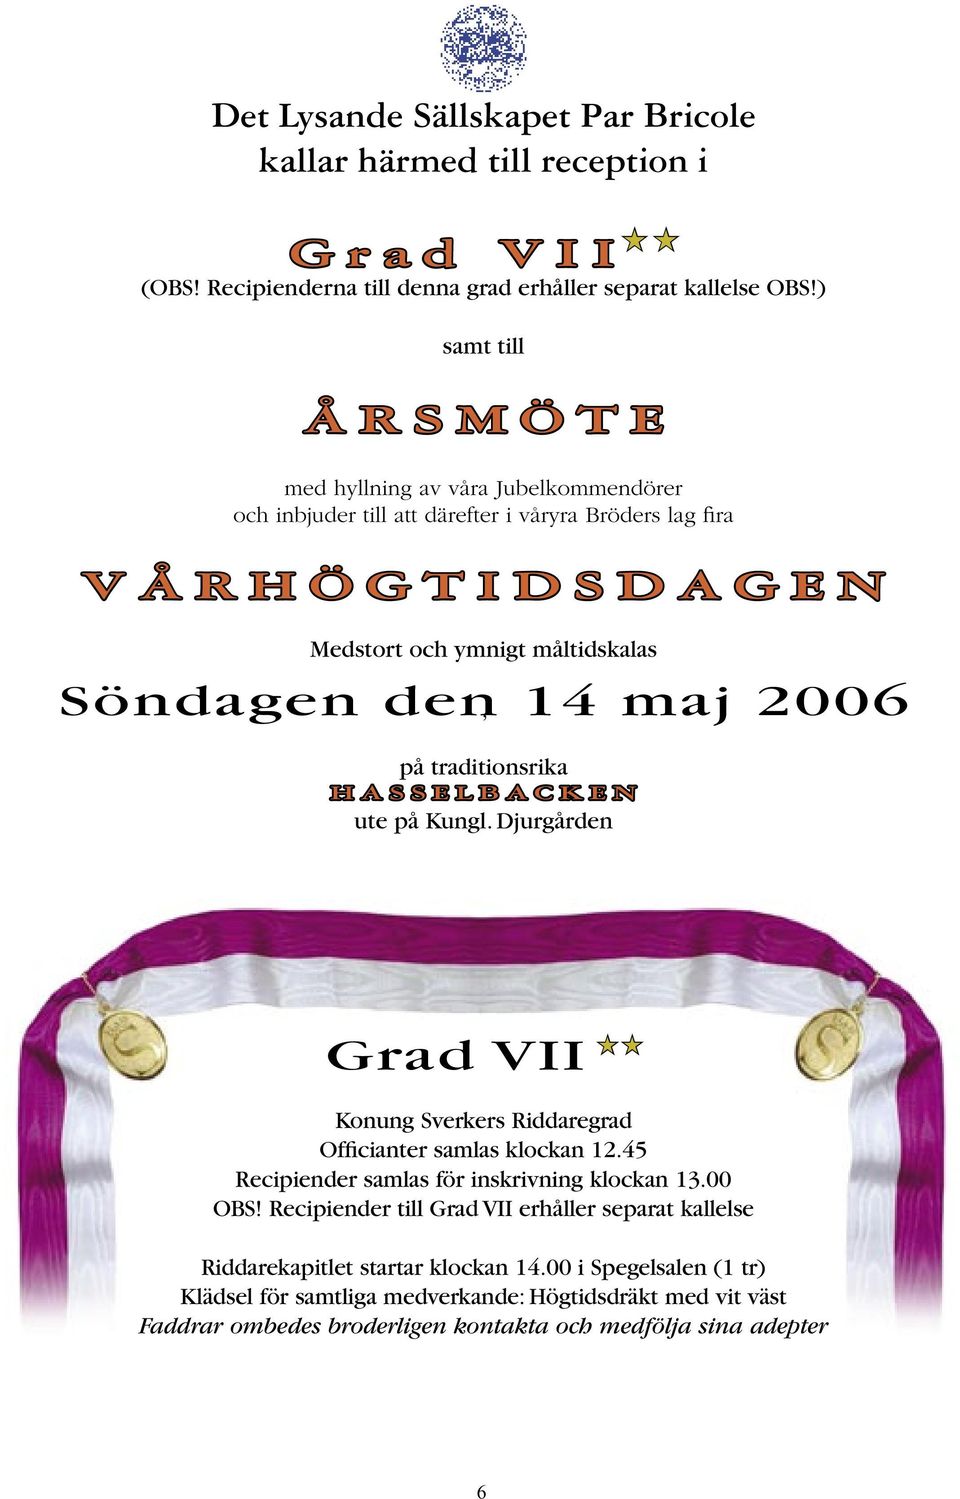 den 14 maj 2006 på traditionsrika H A S S E L B A C K E N ute på Kungl. Djurgården Grad VII Konung Sverkers Riddaregrad Officianter samlas klockan 12.